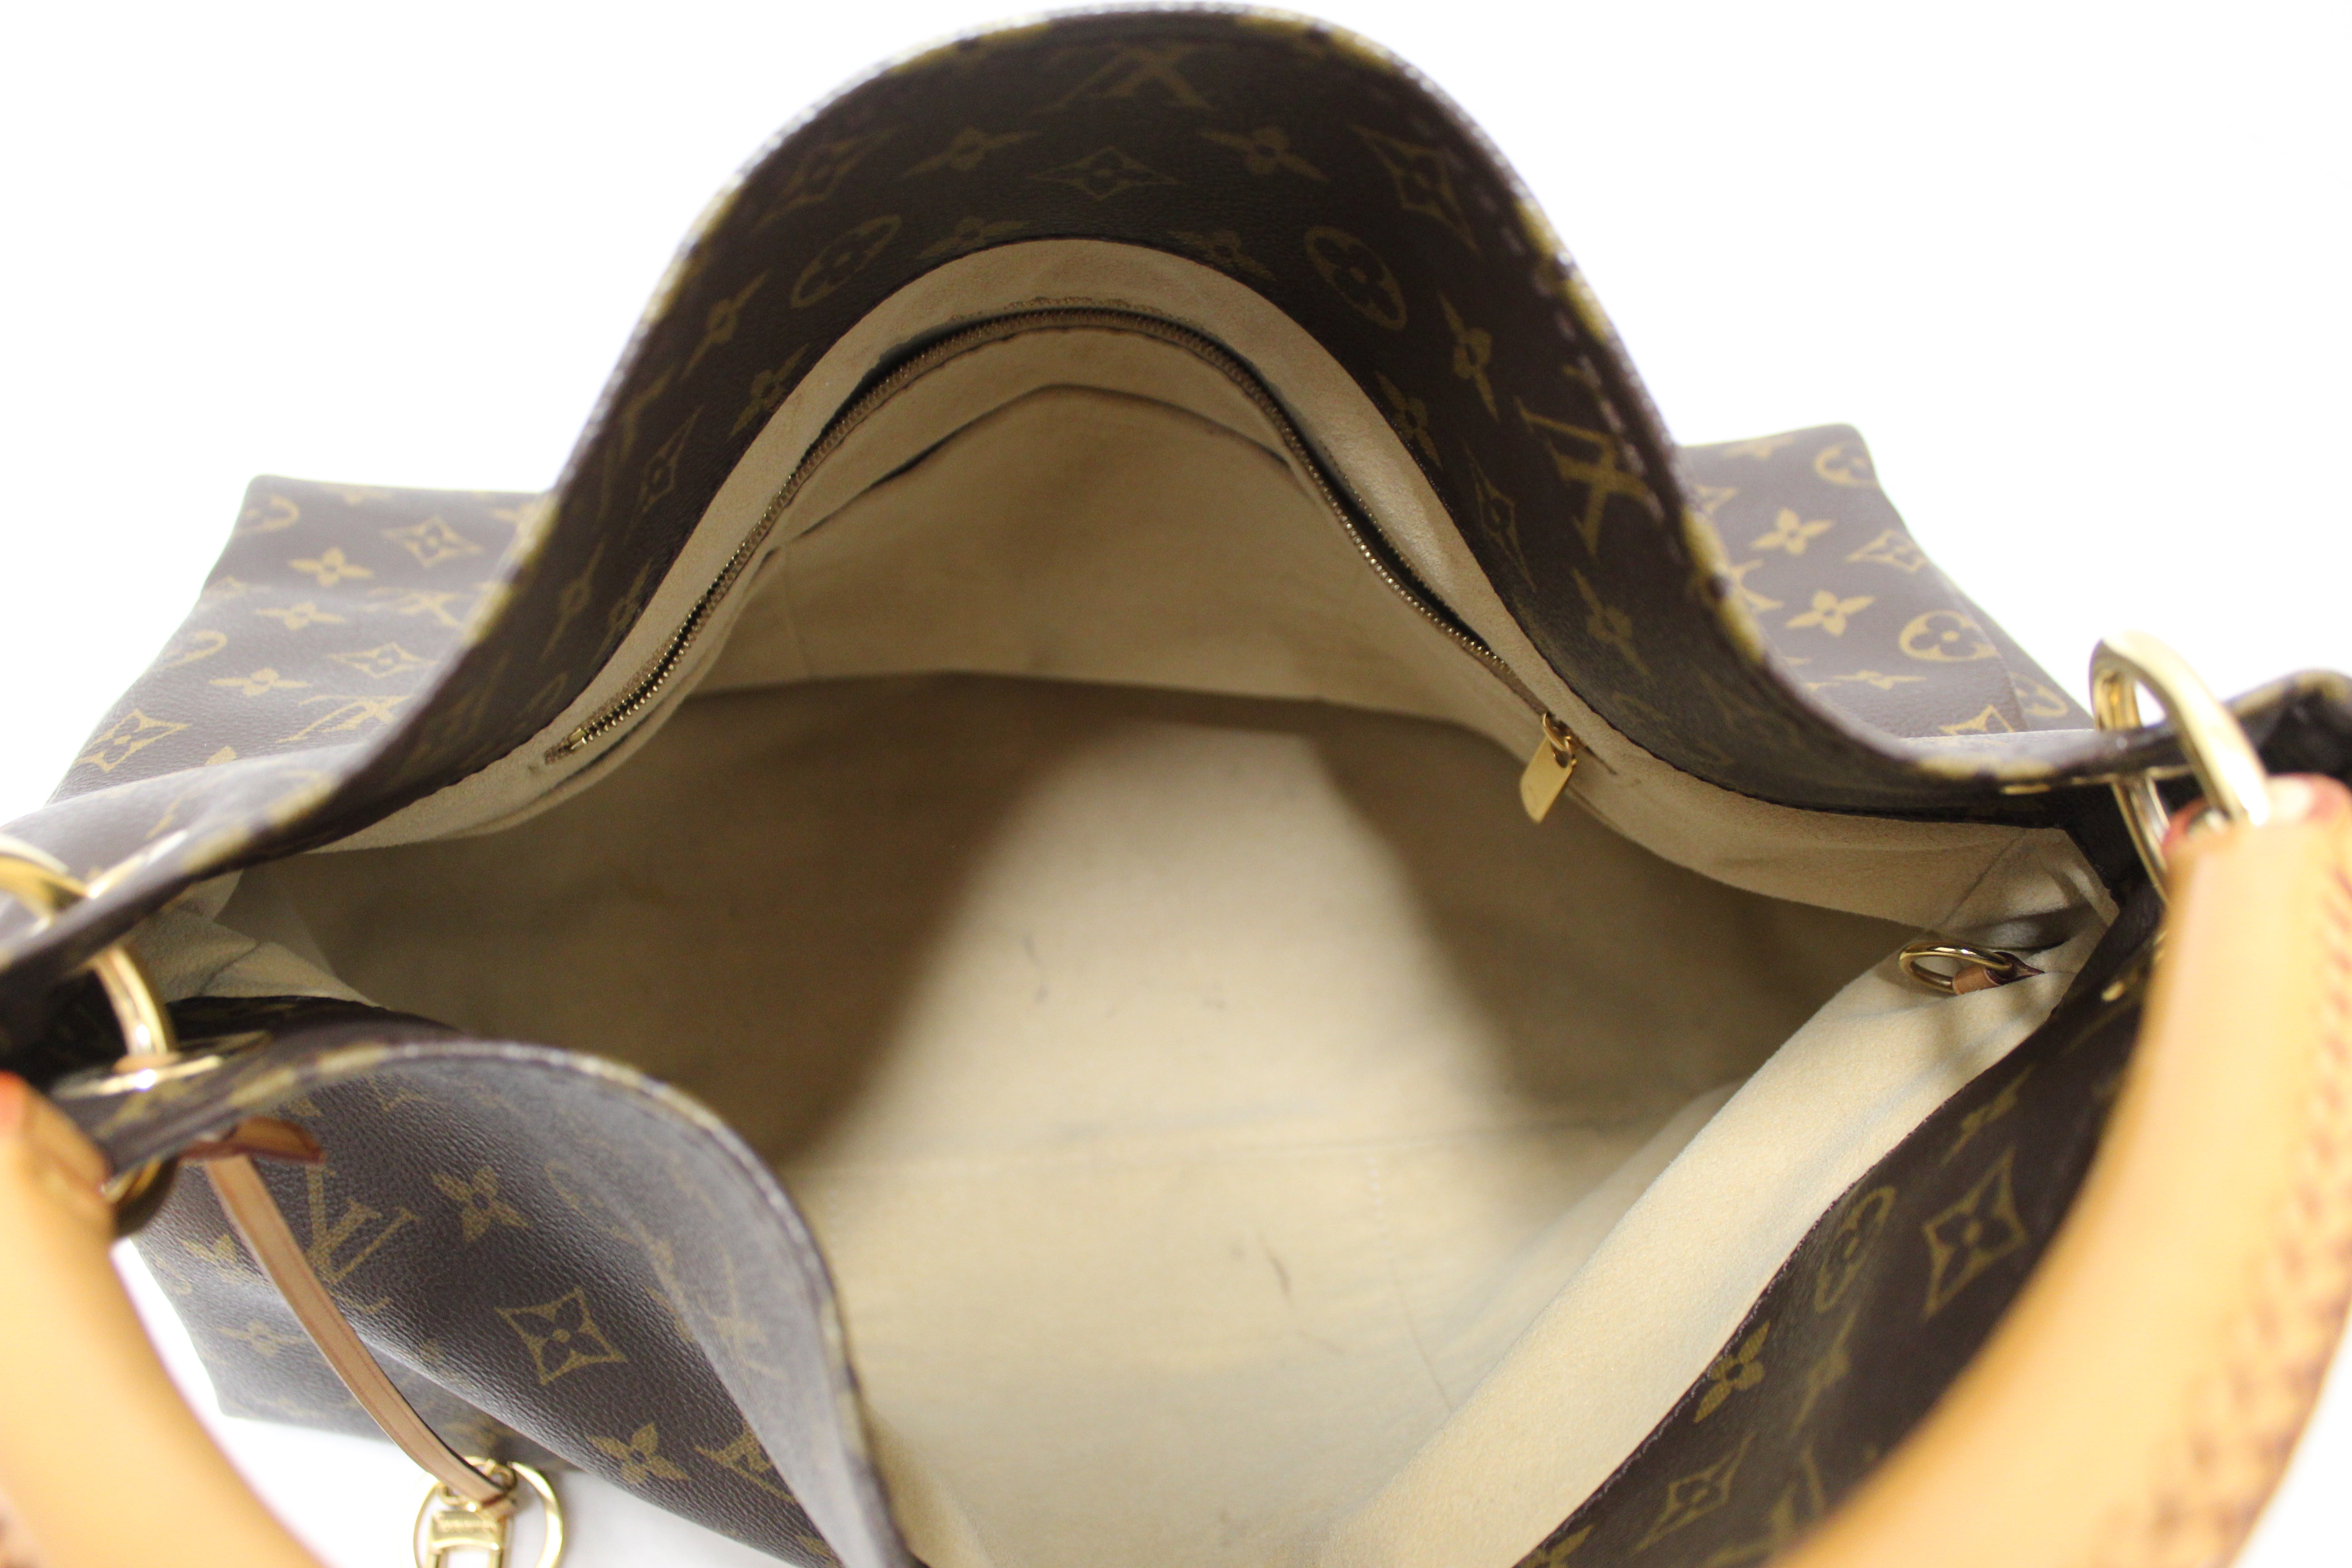 Authentic Louis Vuitton Classic Monogram Canvas Artsy MM Shoulder Bag